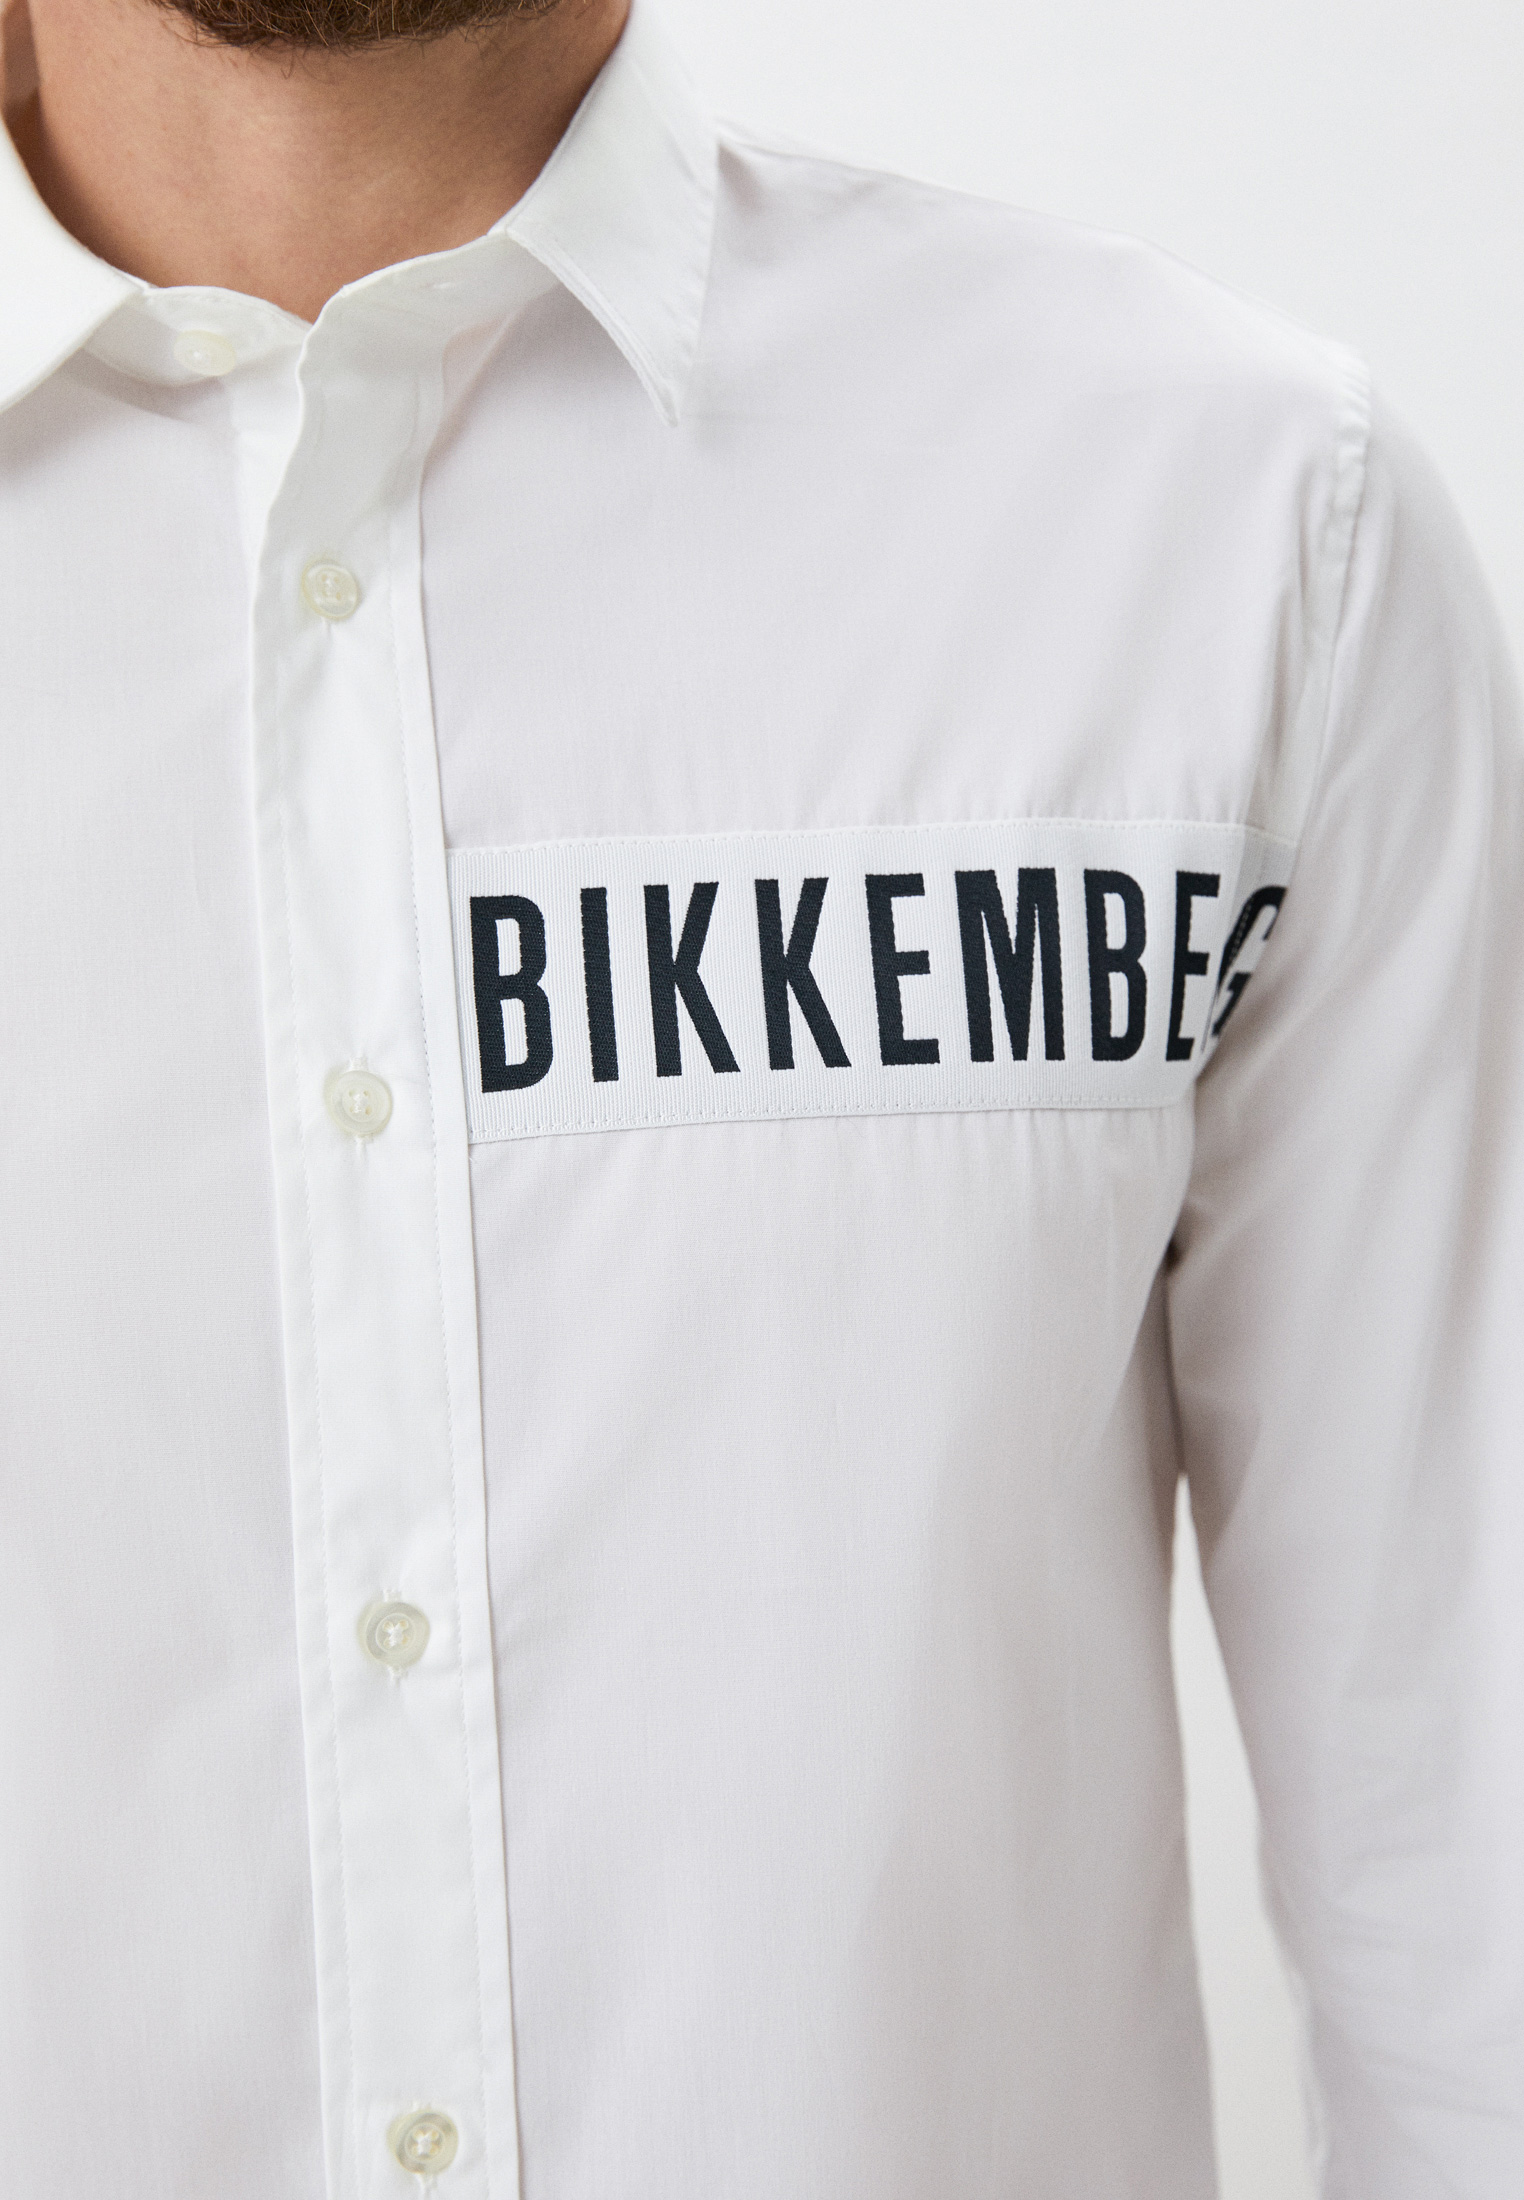 Рубашка с длинным рукавом Bikkembergs (Биккембергс) C C 055 80 S 2931: изображение 9